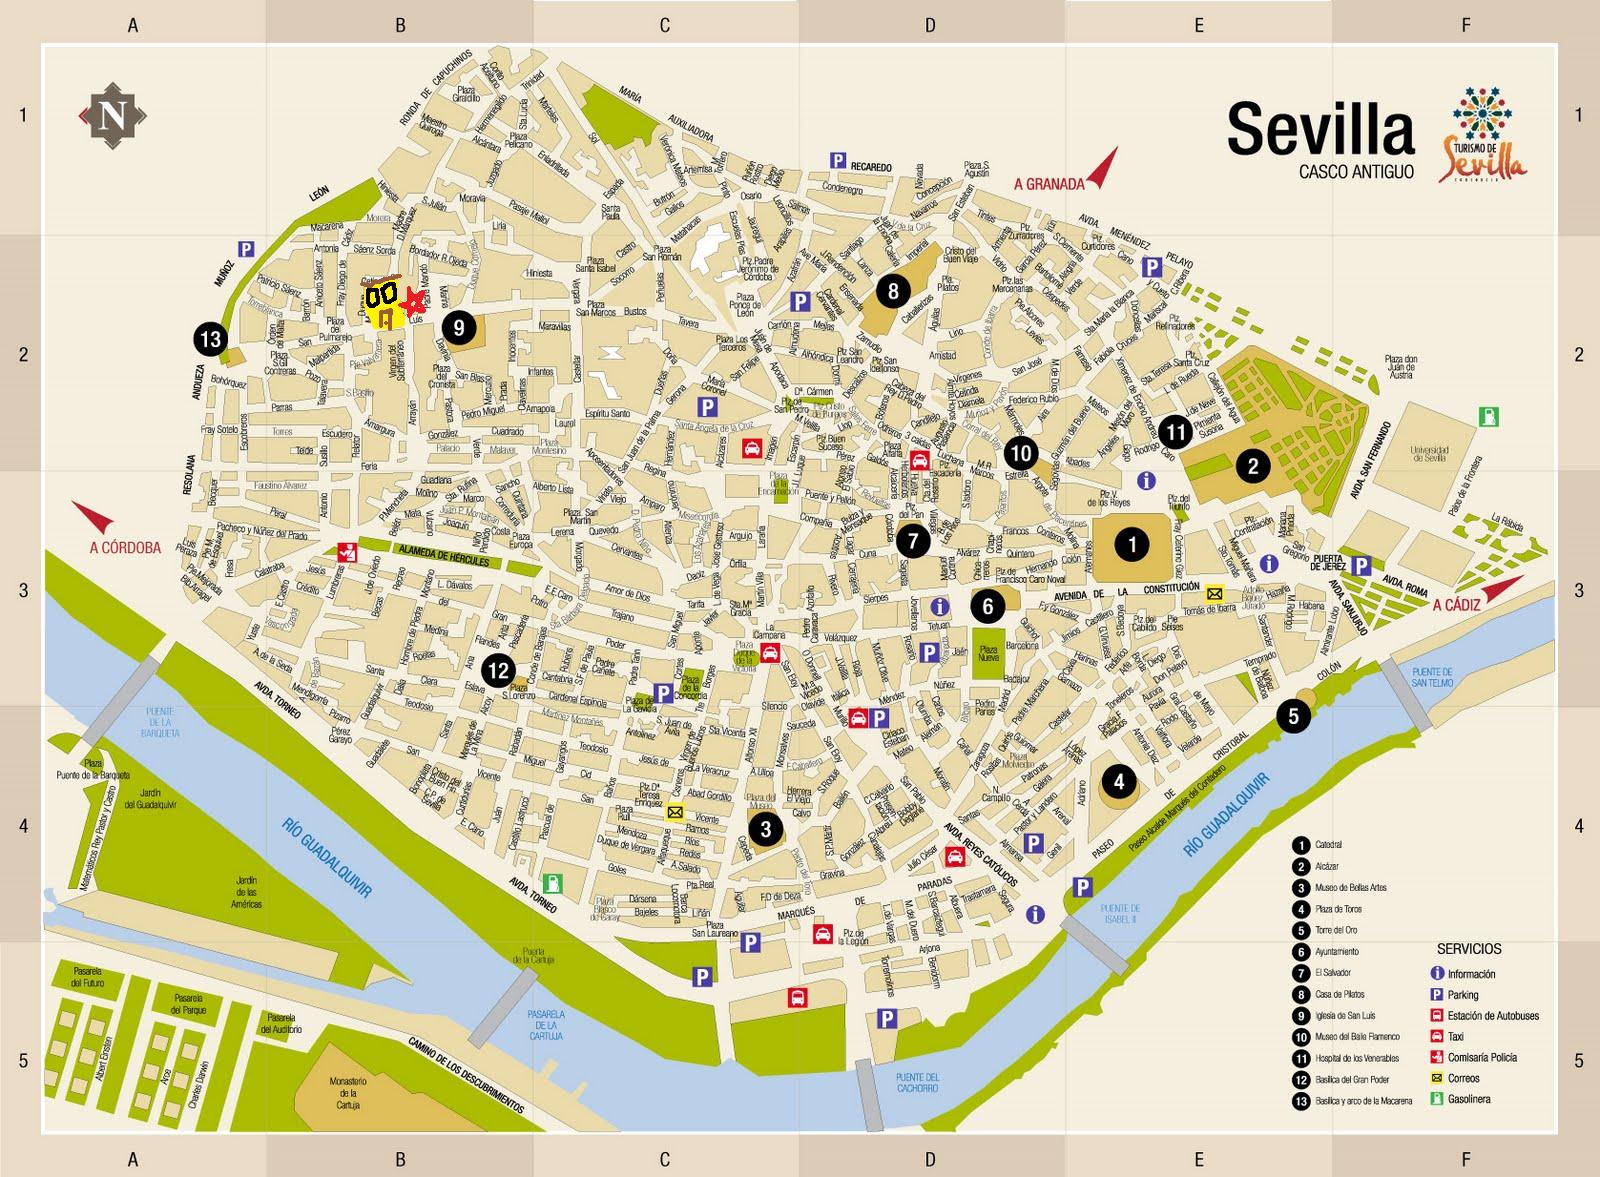 seville spain tourist map